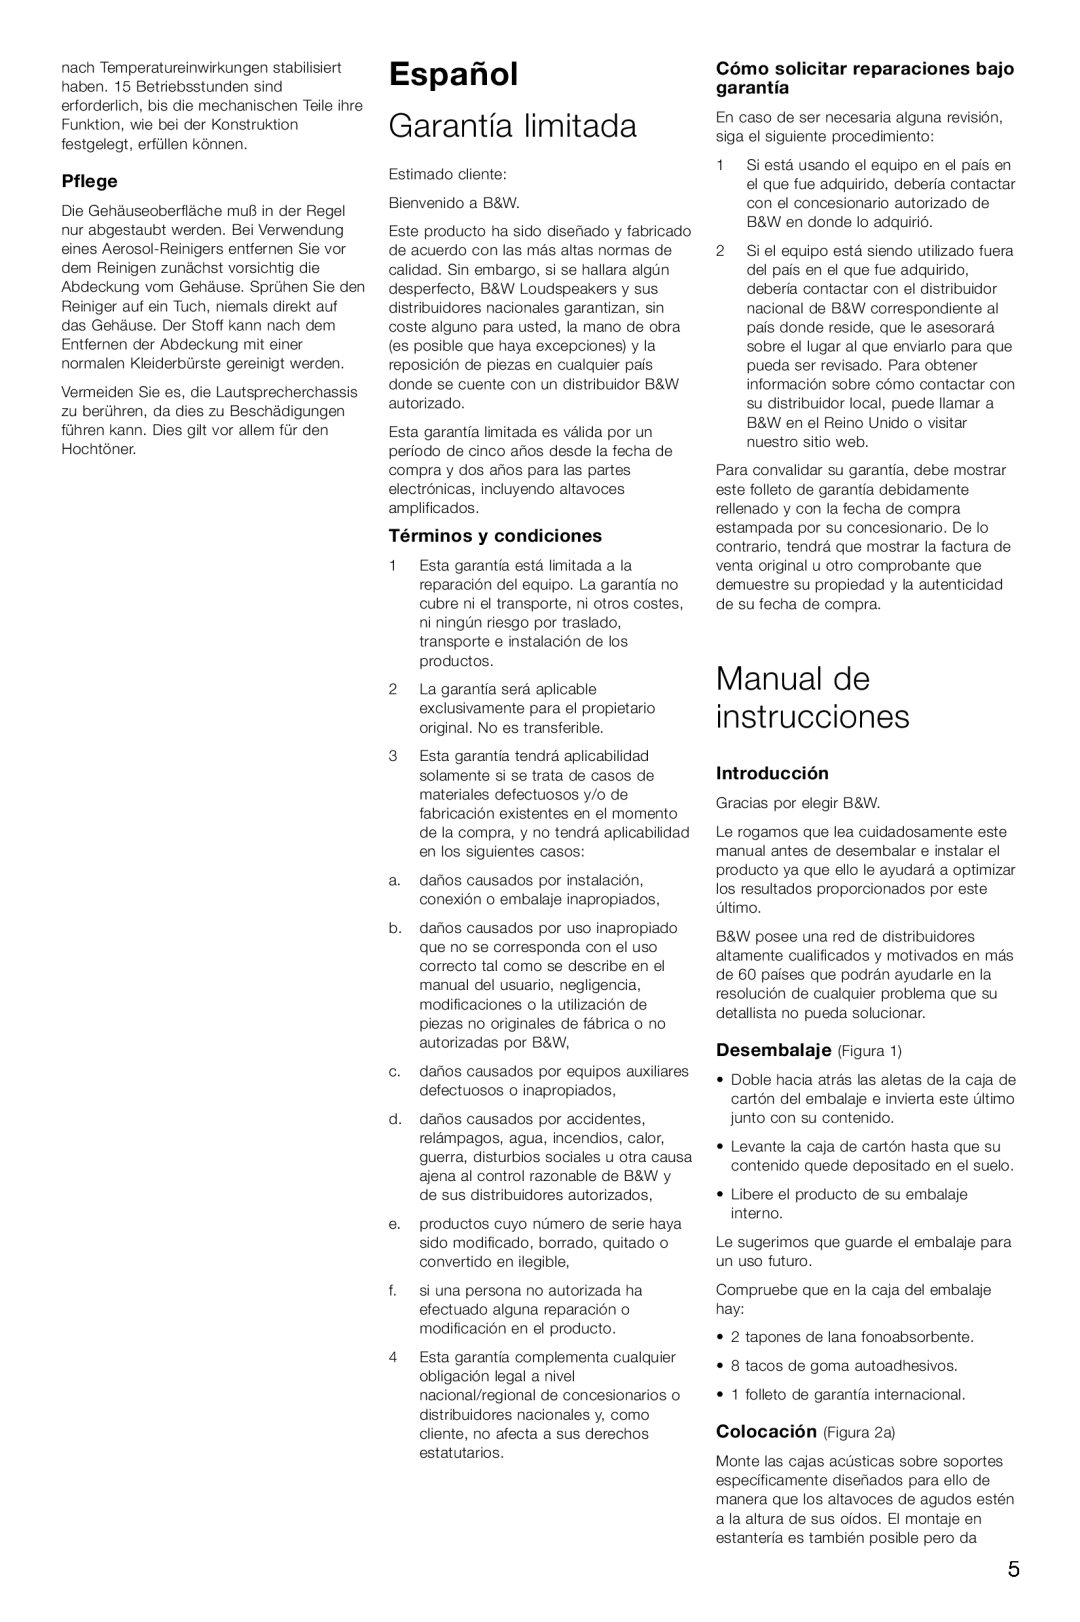 Bowers & Wilkins CM2 Español, Garantía limitada, Manual de instrucciones, Pflege, Términos y condiciones, Introducción 